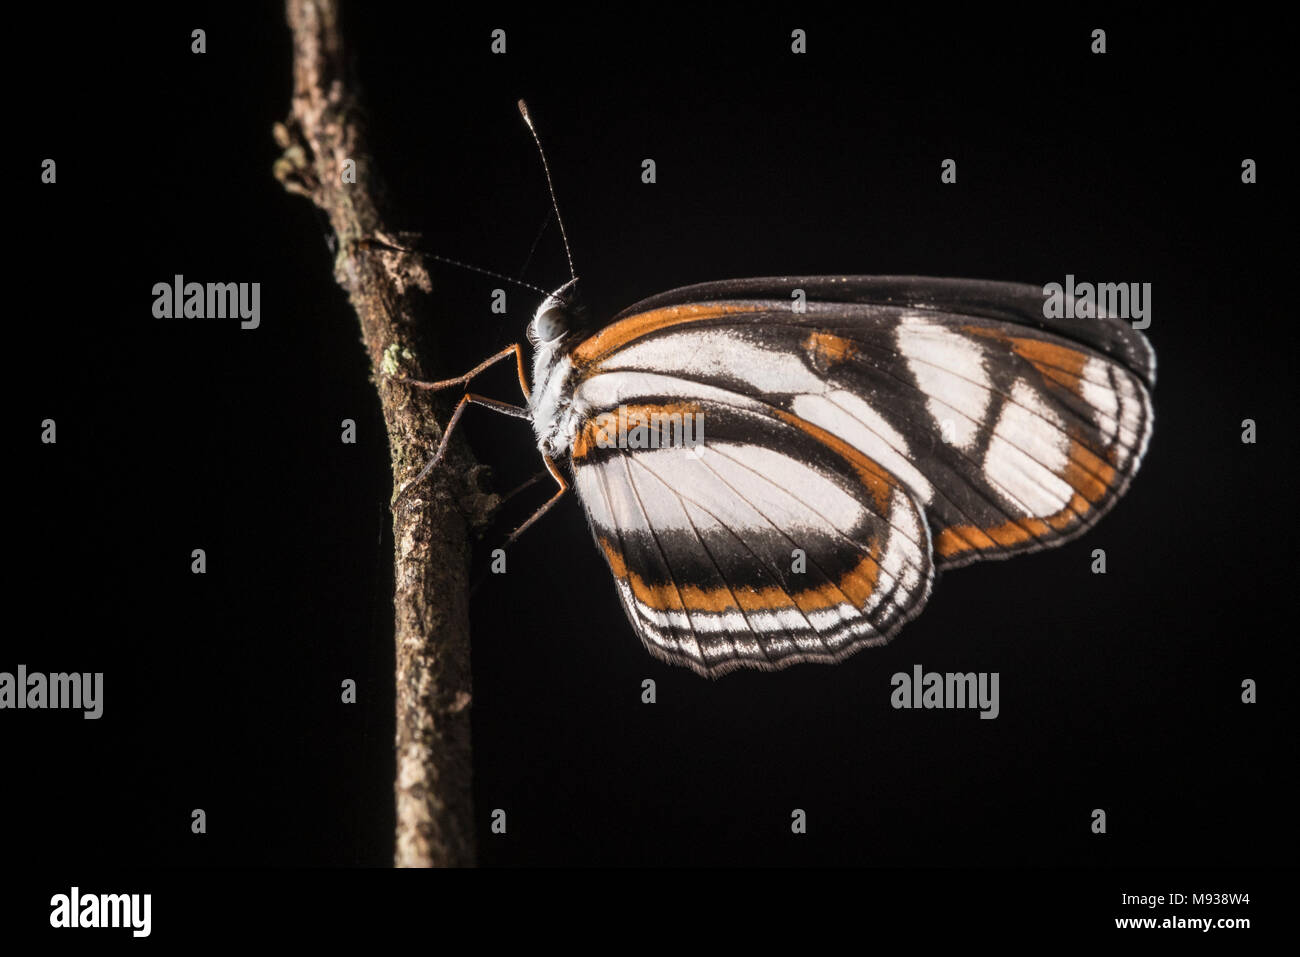 Ein Heliconius Schmetterling aus Peru, diese Arten in einflussreichen mimikry Studien verwendet wurde, Ökologie und Evolution zu verstehen. Stockfoto